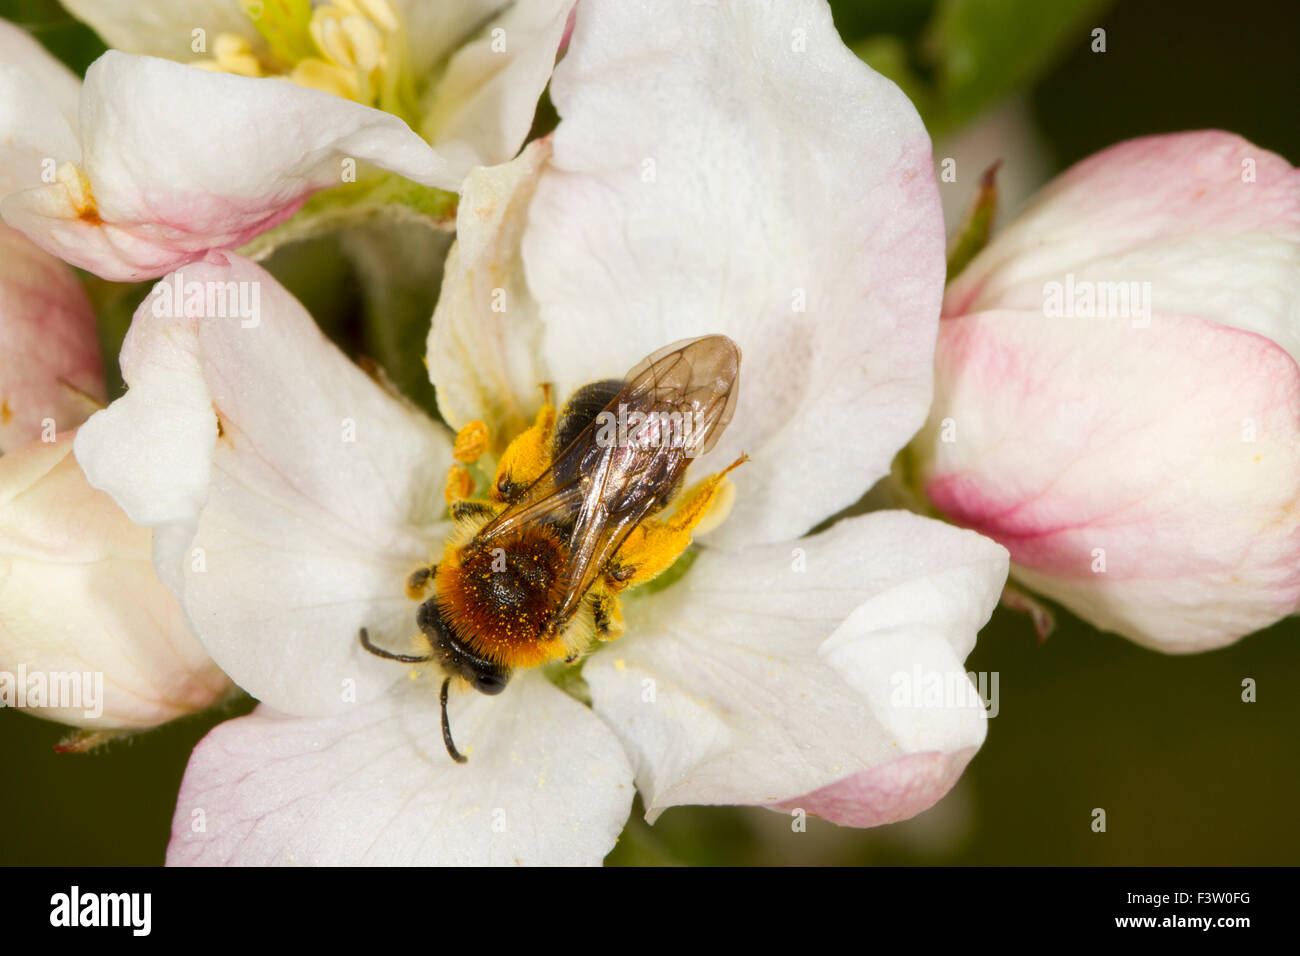 Au début de l'exploitation minière (abeille femelle Andrena haemorrhoa) alimentation des femelles adultes et pollinisent blossom de pommier cultivé (Malus domestica). Banque D'Images